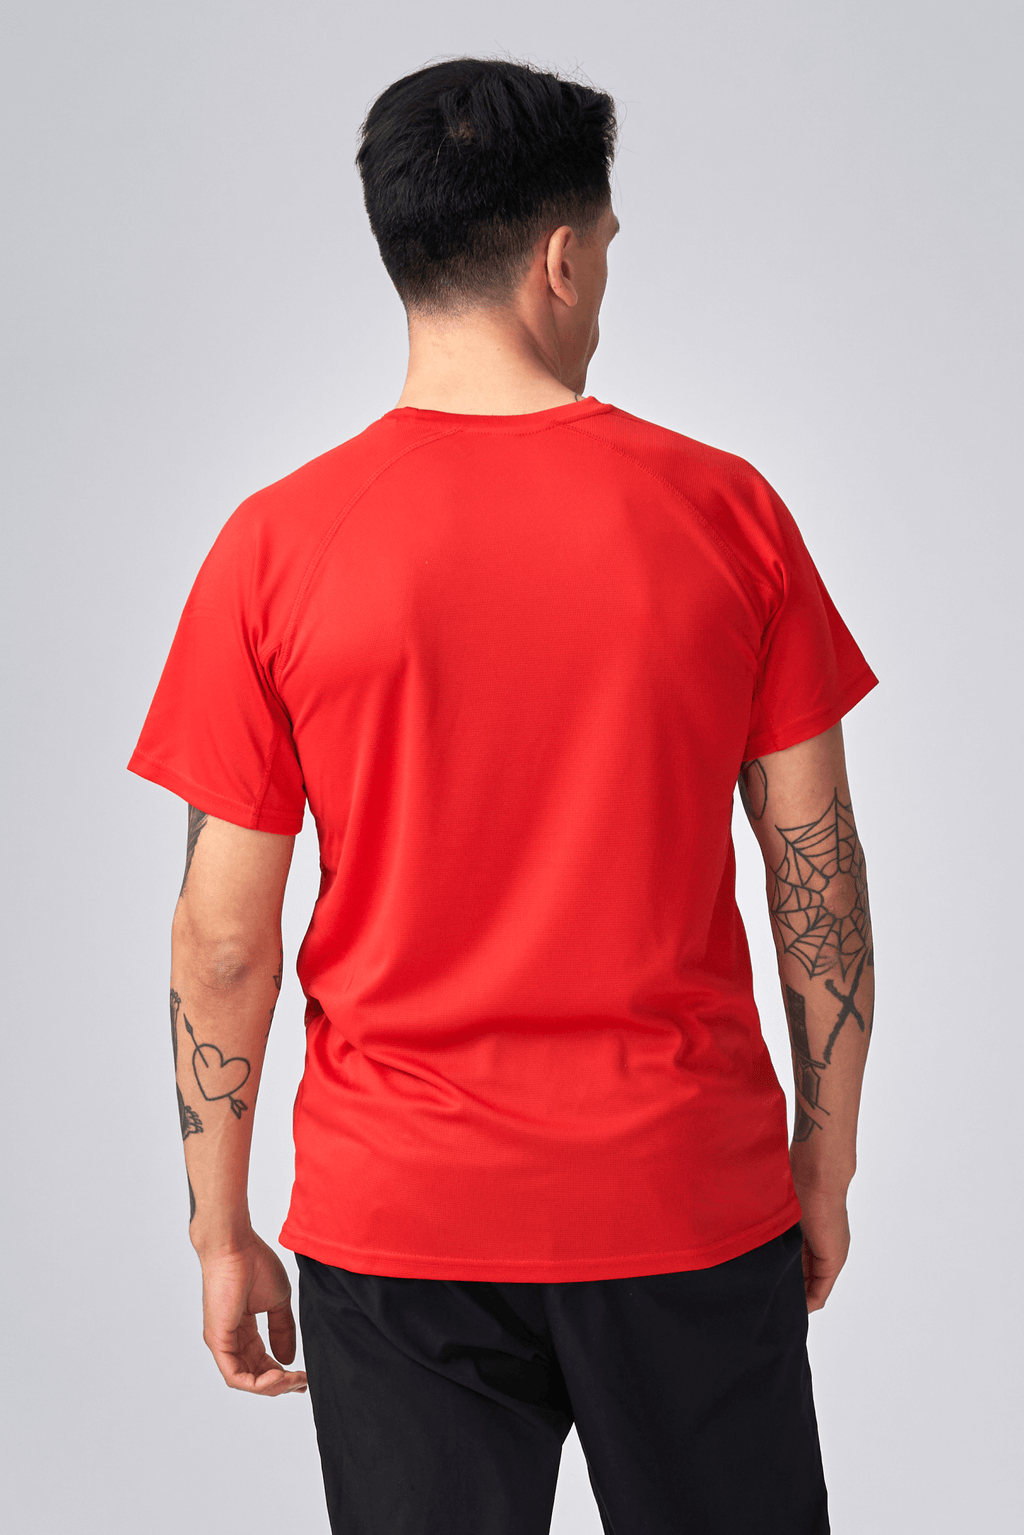 Trænings T-shirt - Rød